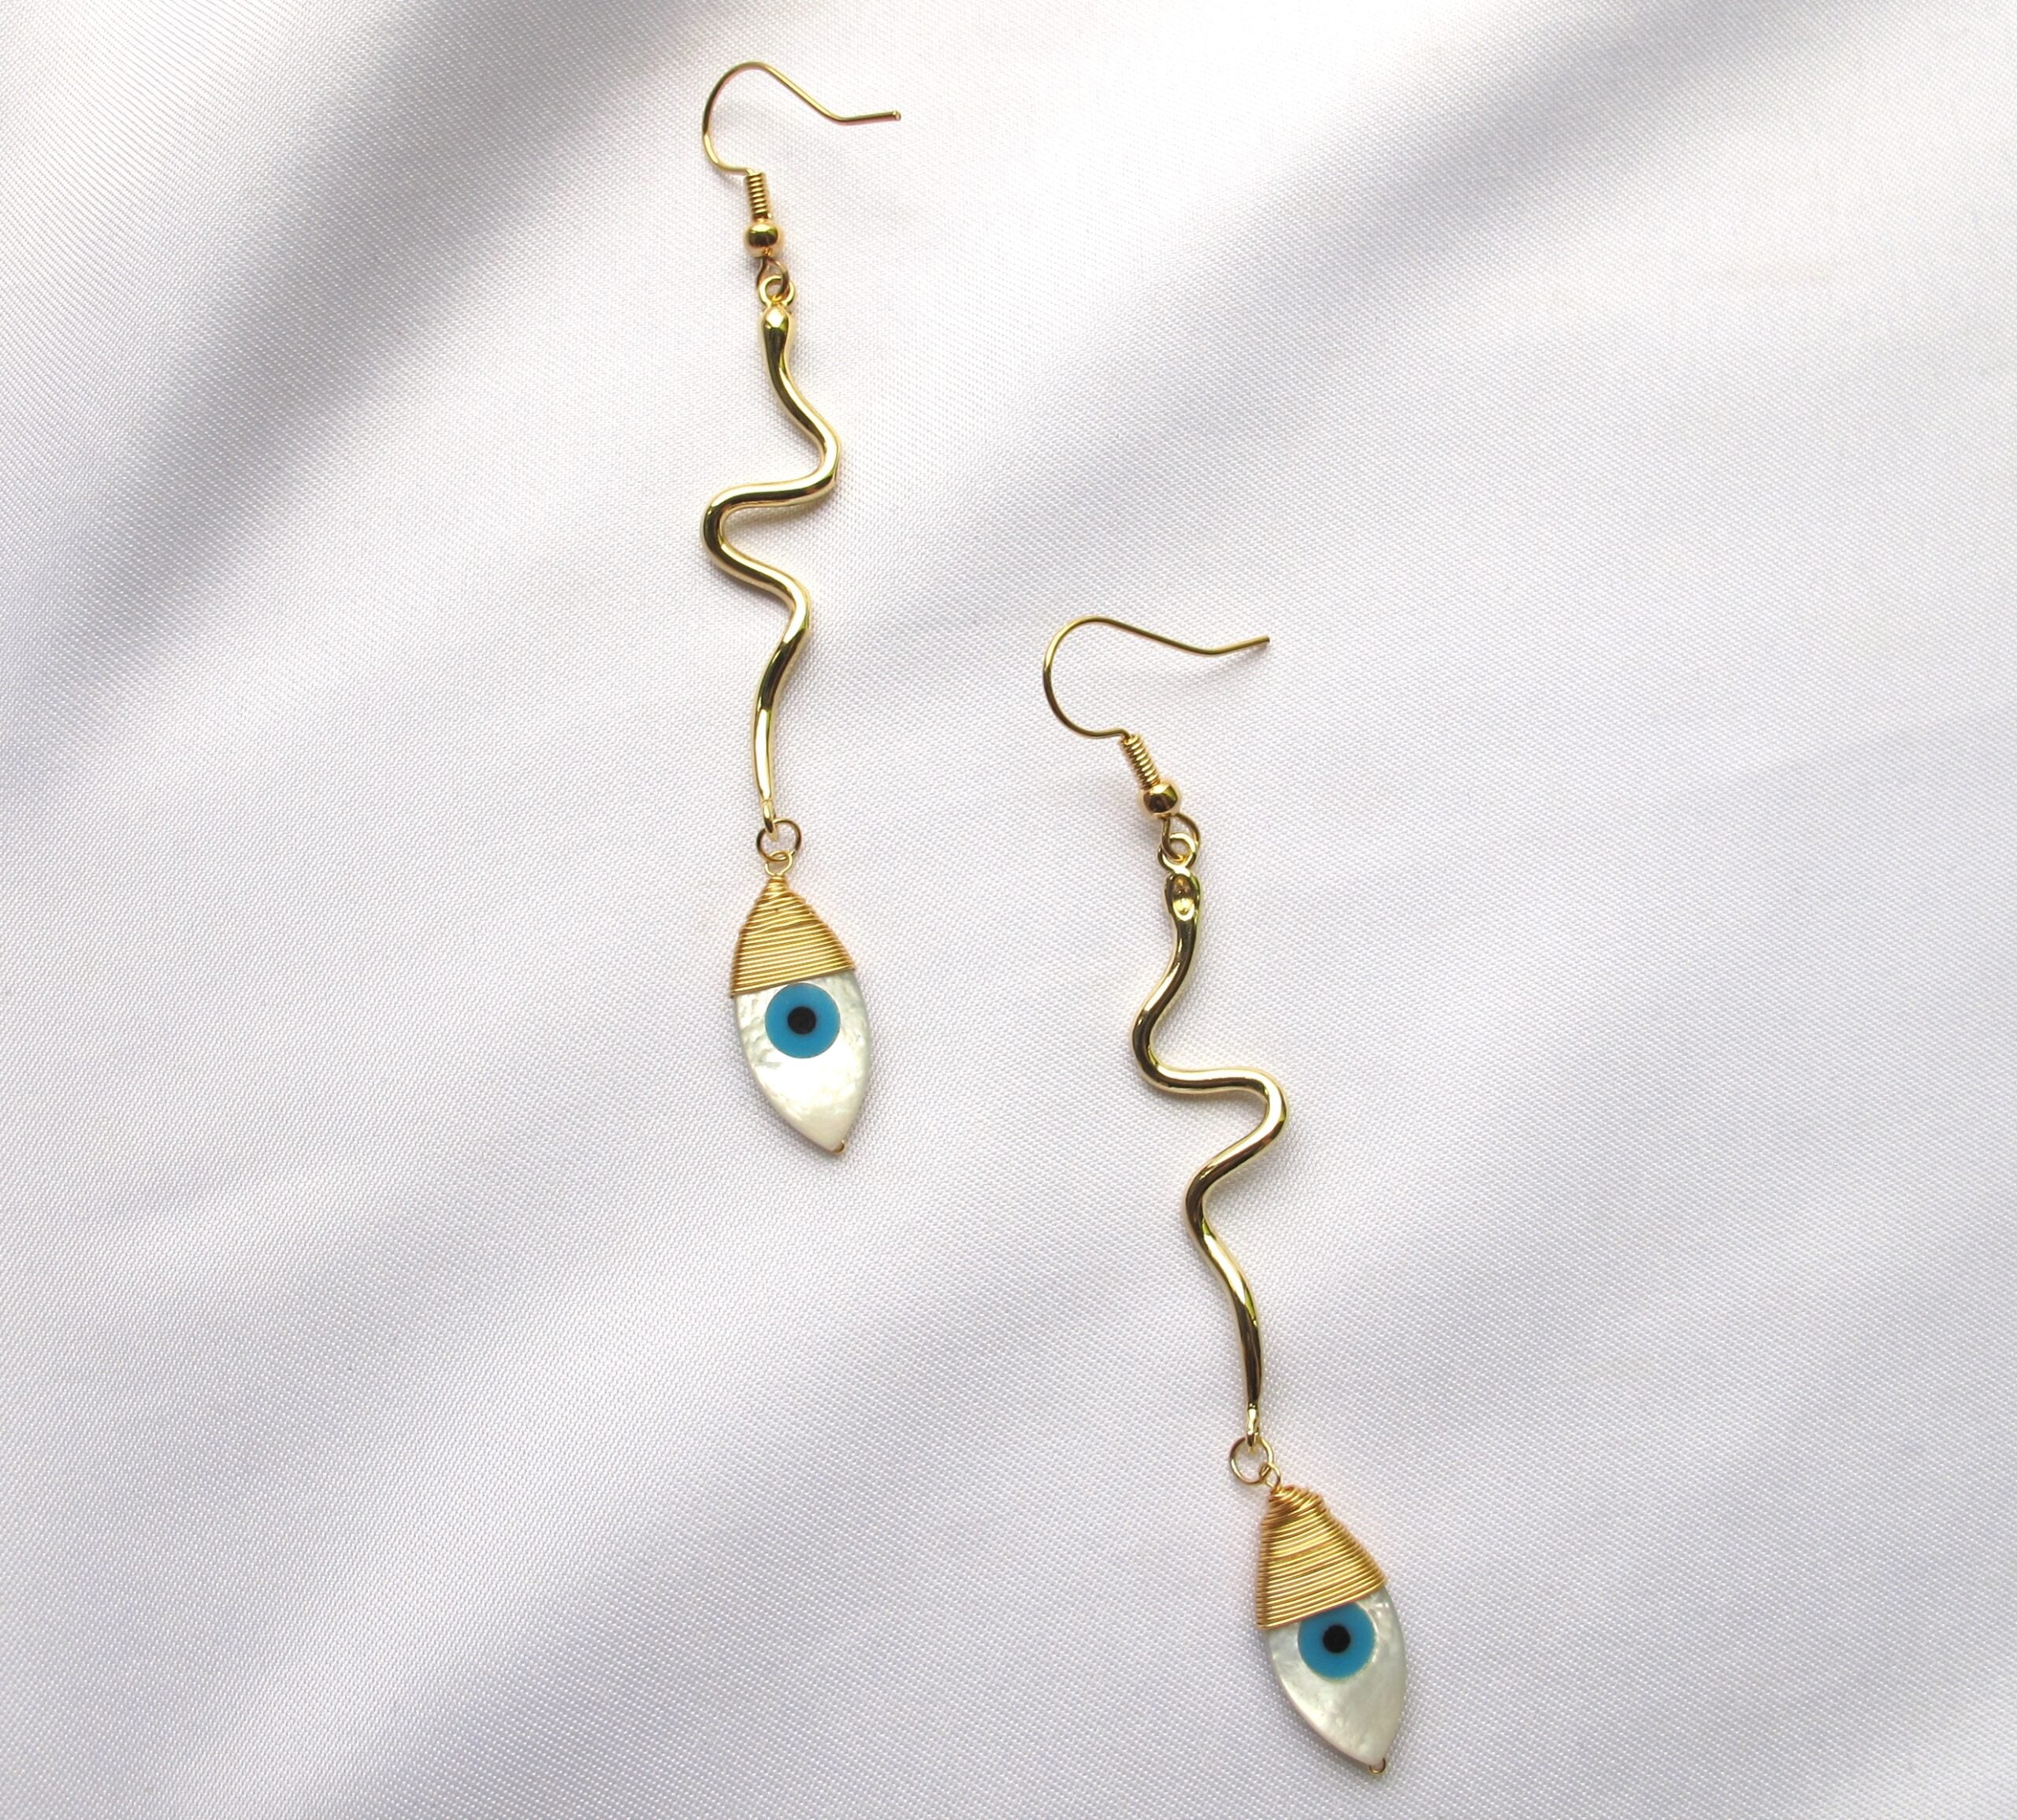 Twisted gold evil eye earrings – Aleppo